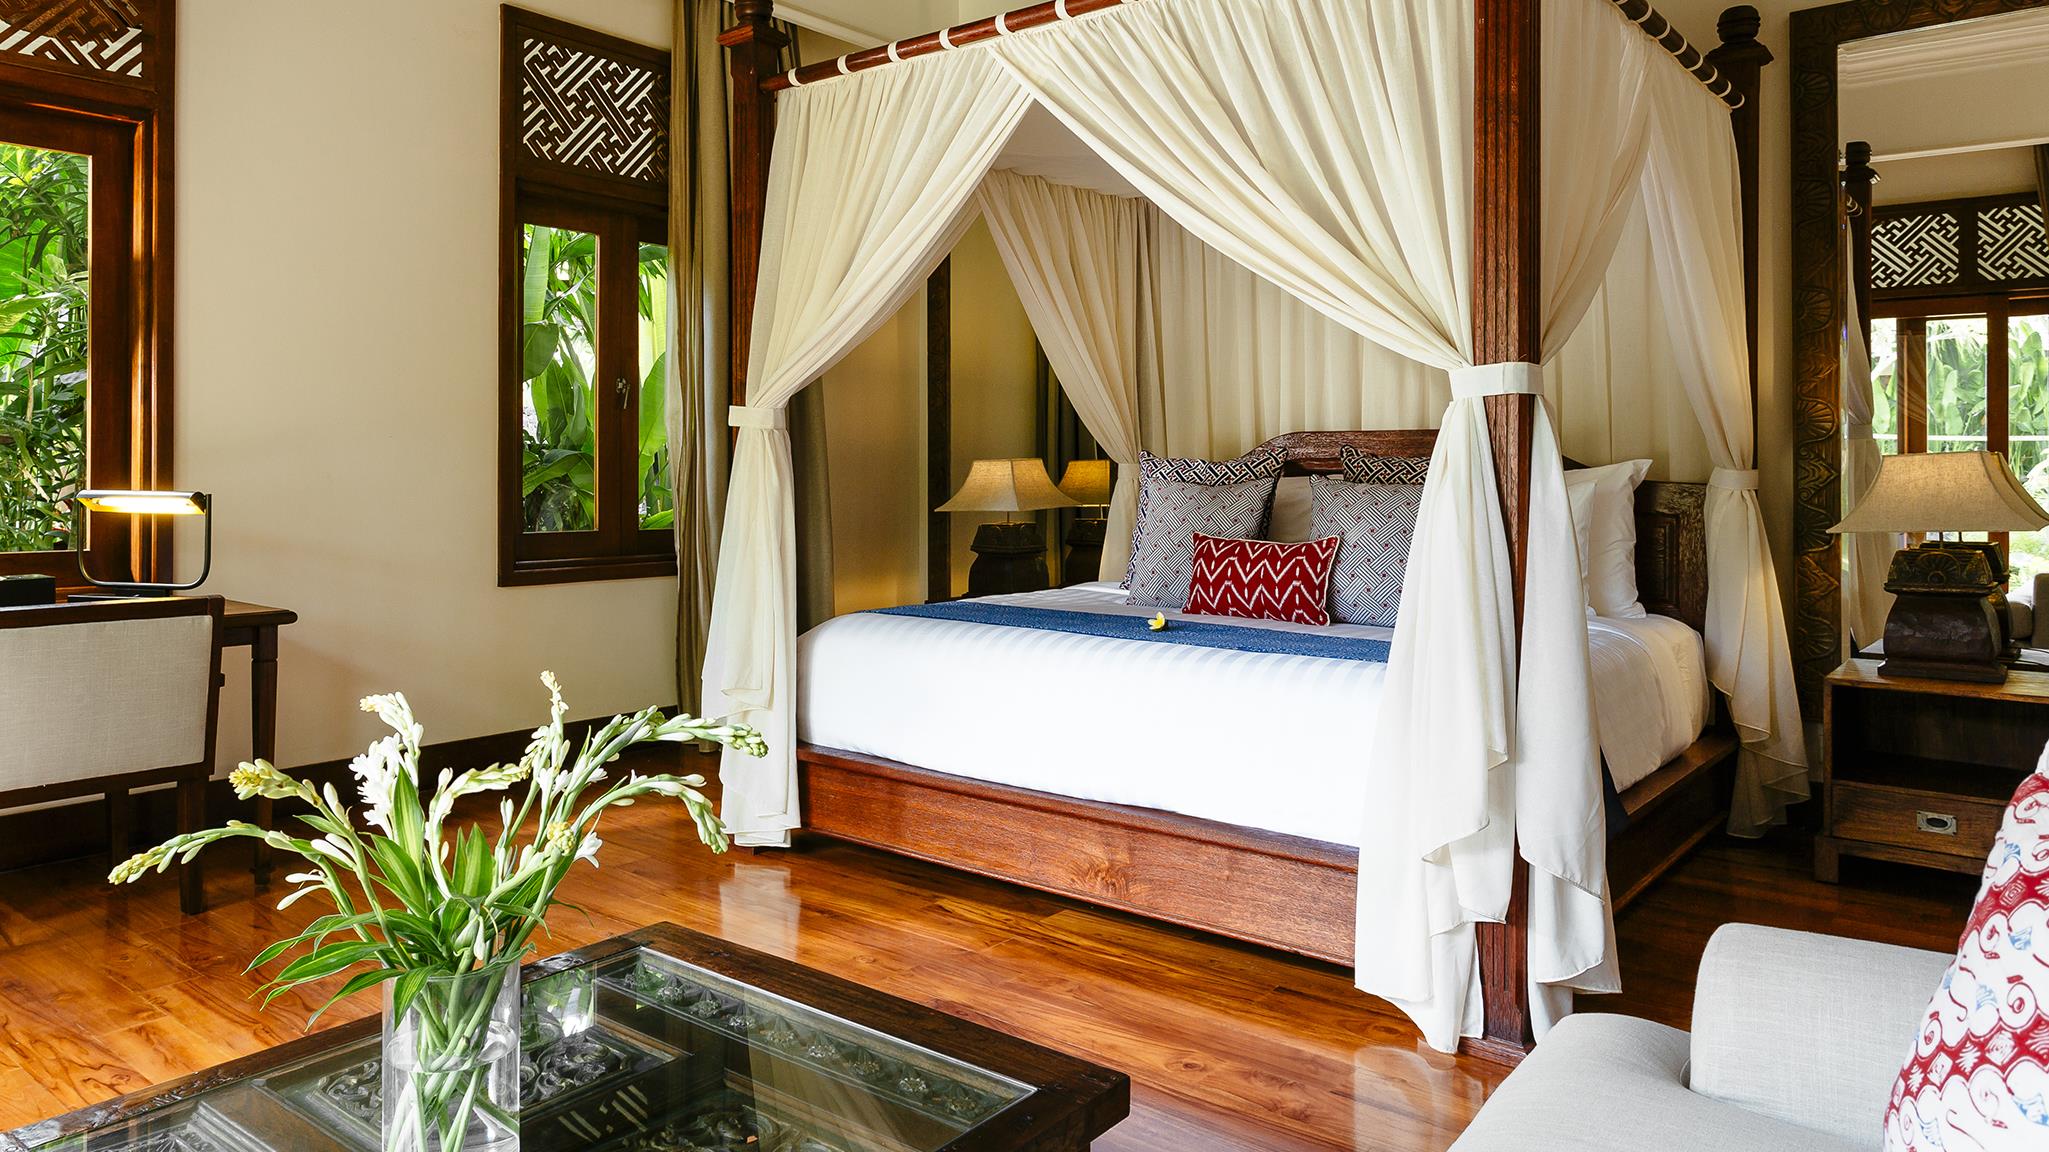 Bedroom with Wooden Floor - Villa Semarapura - Seseh, Bali